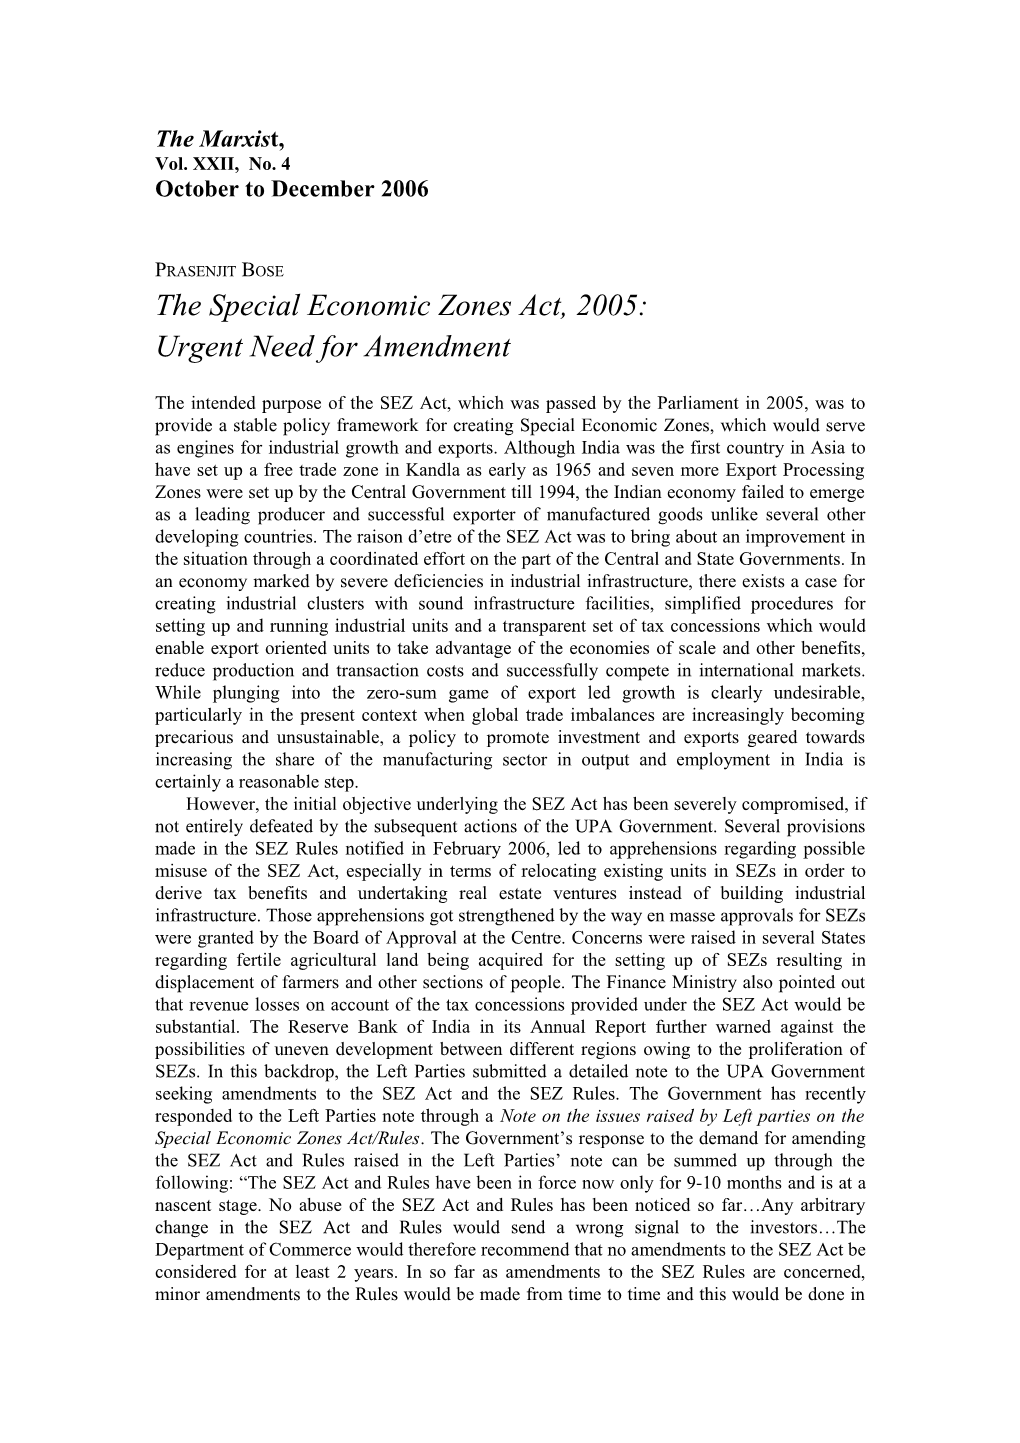 The Special Economic Zones Act, 2005